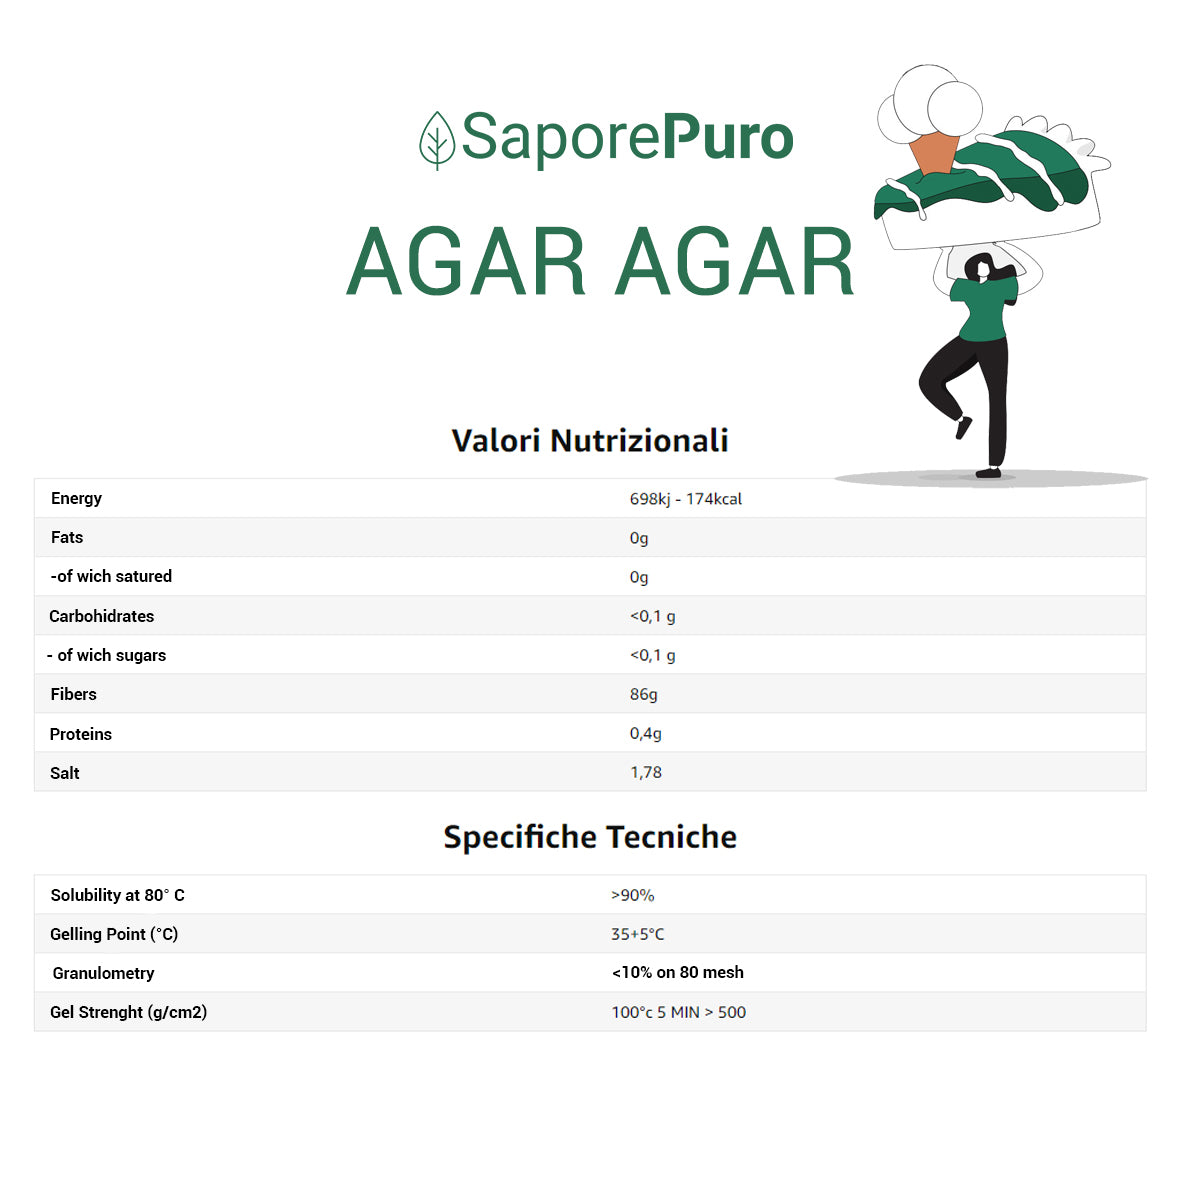 Agar Agar - E406 - Origine ITALIA - SaporePuro